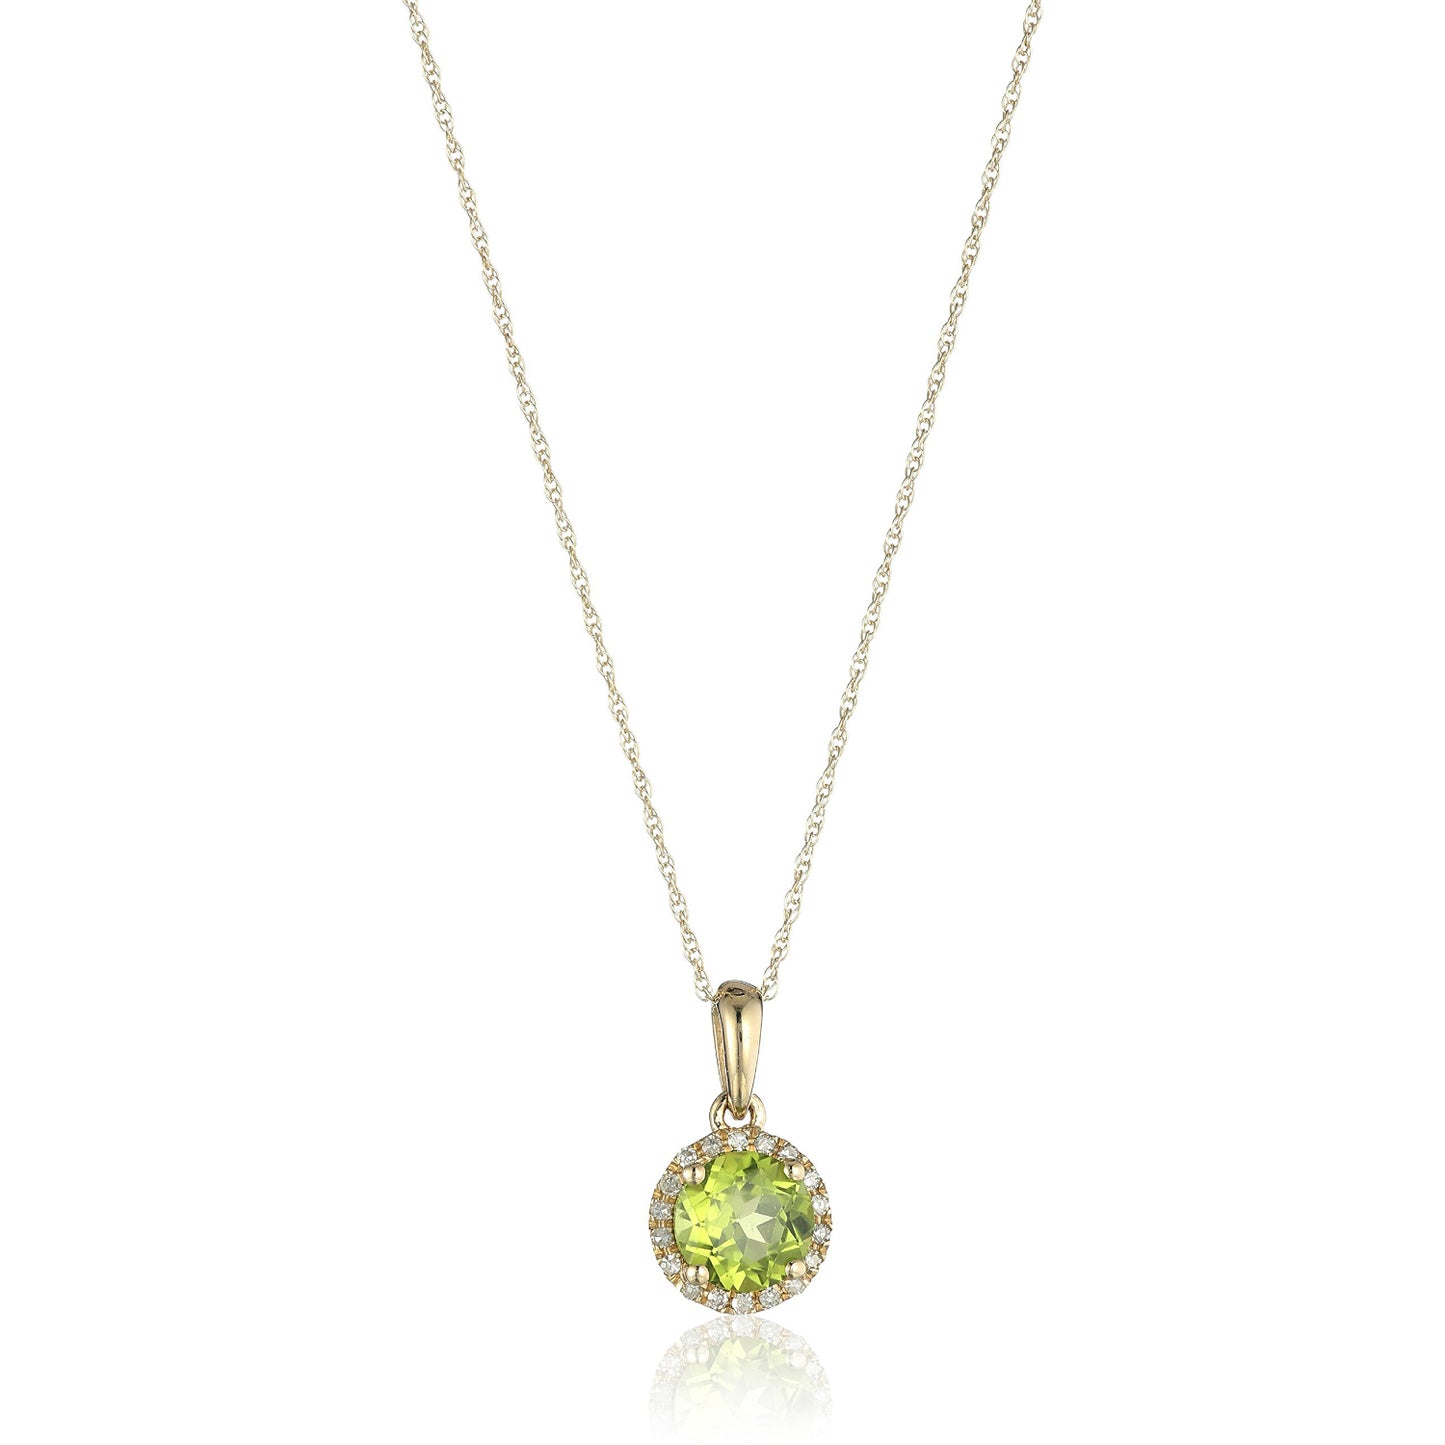 10k Yellow Gold Peridot and Diamond Classic Princess Di Halo Pendant Necklace, 18" - Pinctore